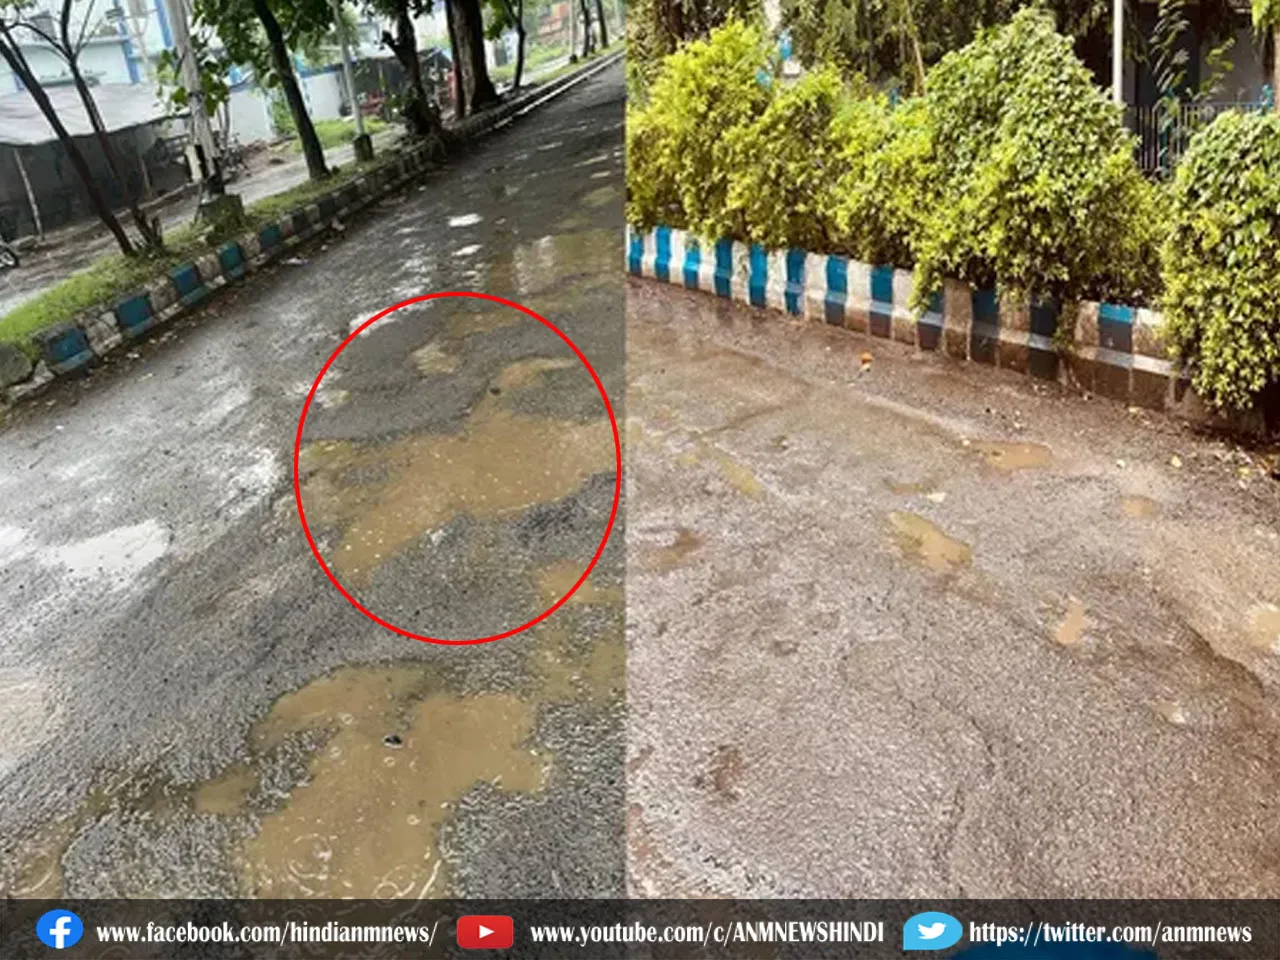 West Bengal news : बिधाननगर की सड़कें दे रही है दुर्घटना को आमंत्रण